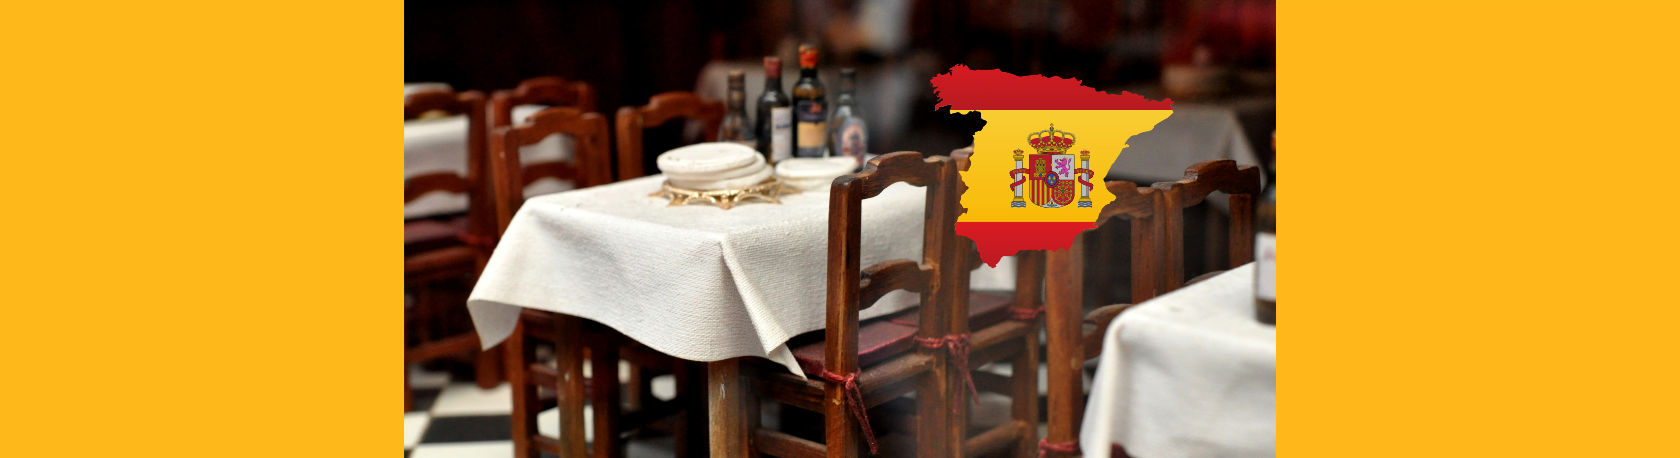 ¿Sabías que el restaurante más antiguo del mundo está en Madrid? - Easy Español